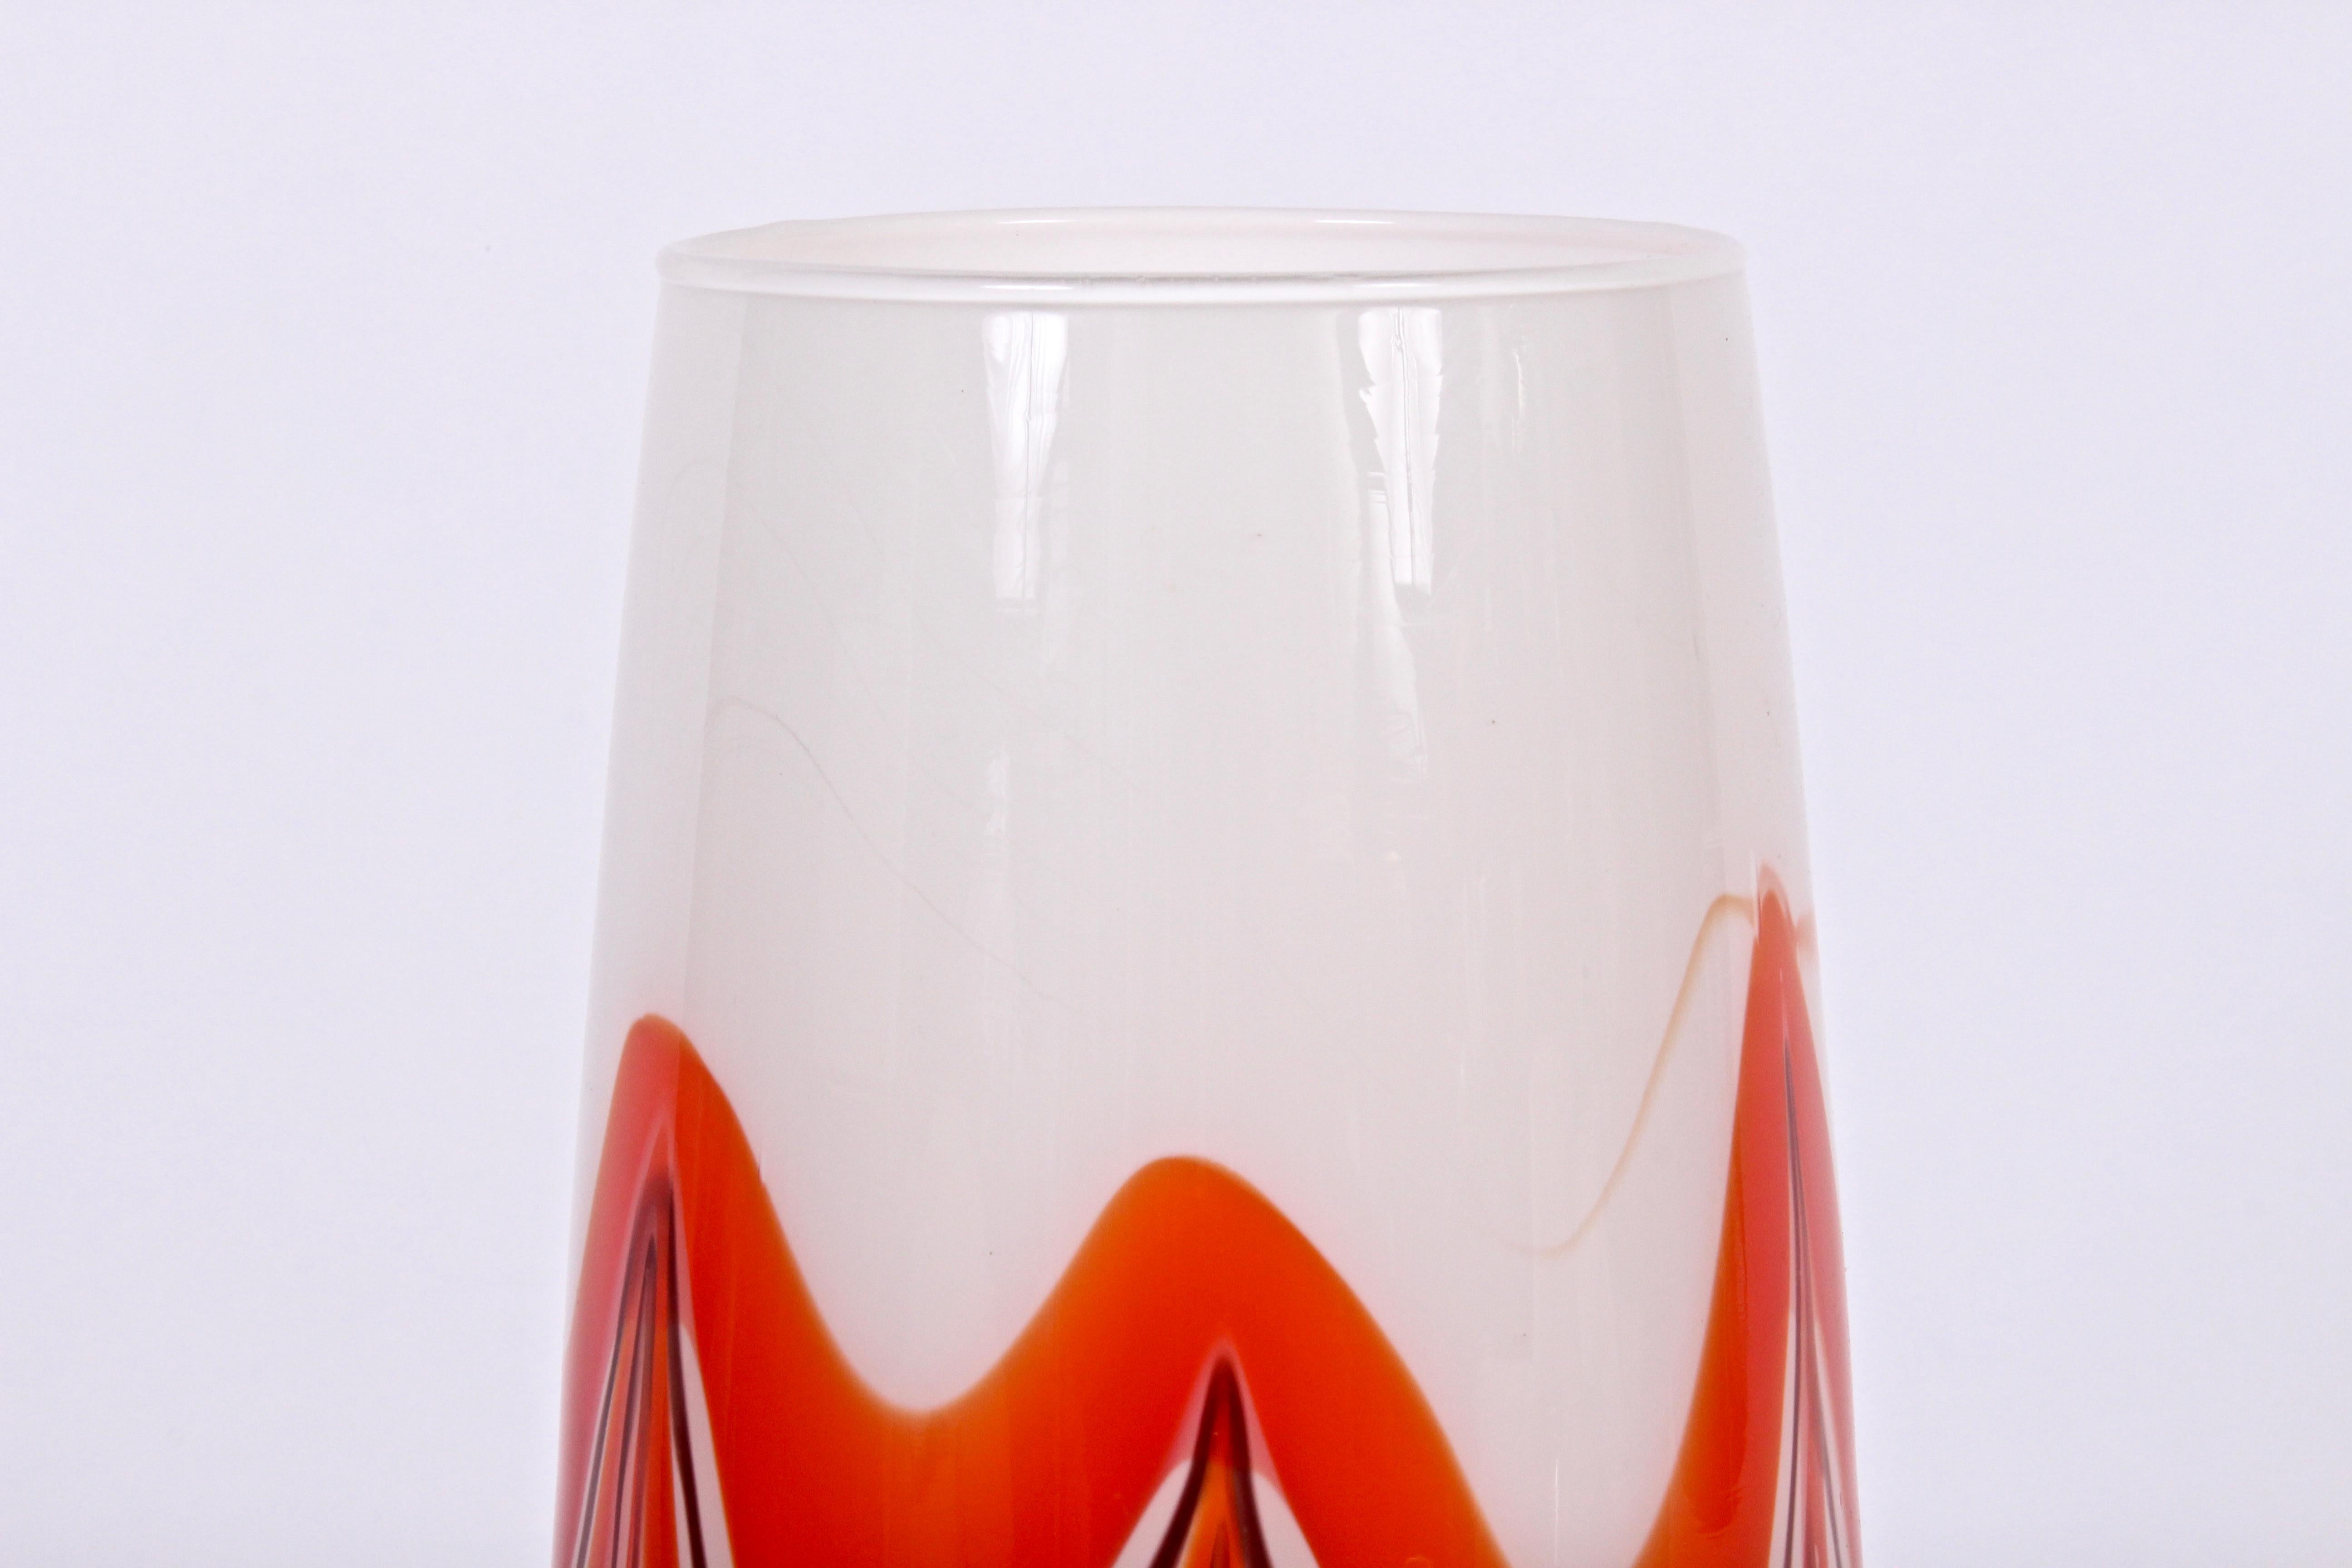 Italienische Vase aus opakem Muranoglas von Carlo Moretti, orange, kastanienbraun und weiß marmoriert.  Handgefertigt. Wie neu, nie benutzt. Hergestellt in Murano, Italien.